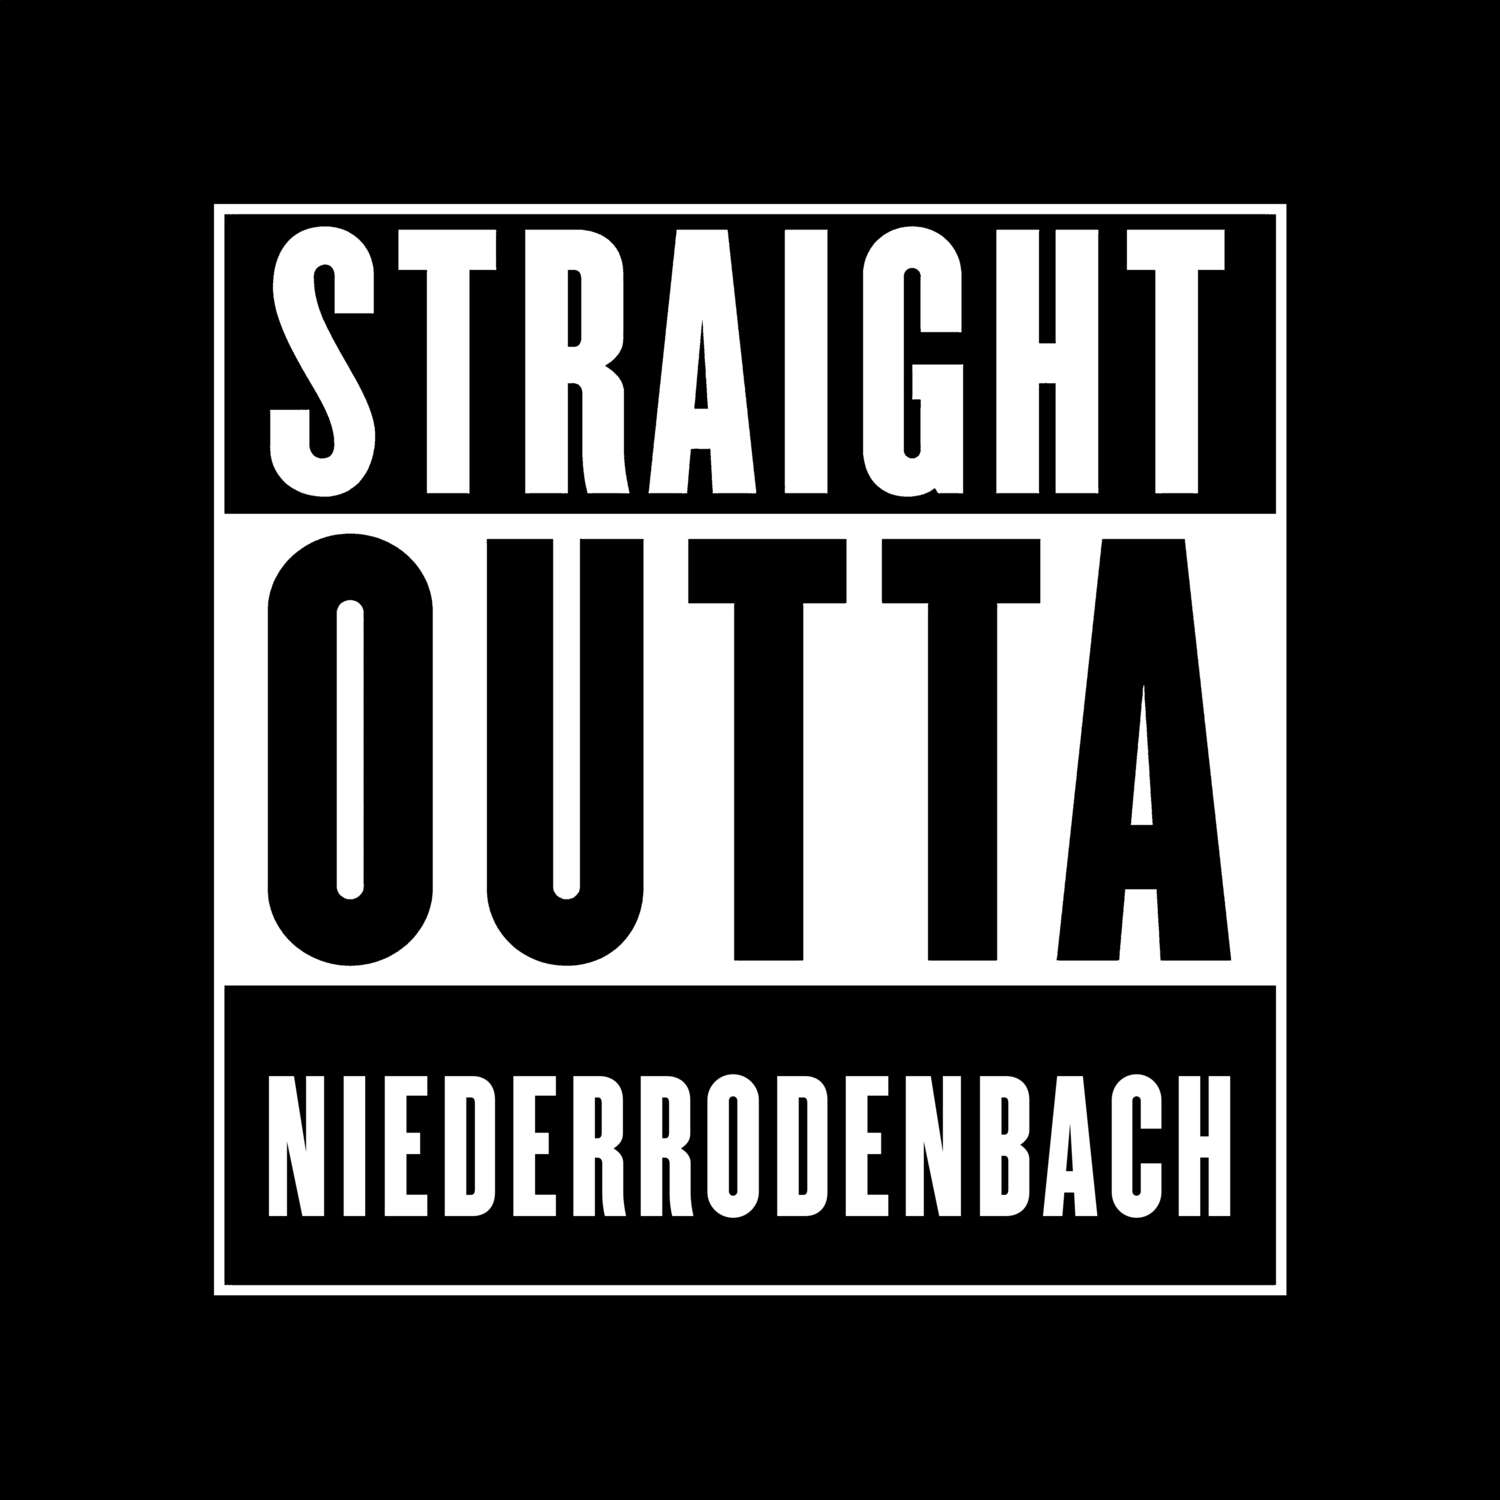 Niederrodenbach T-Shirt »Straight Outta«